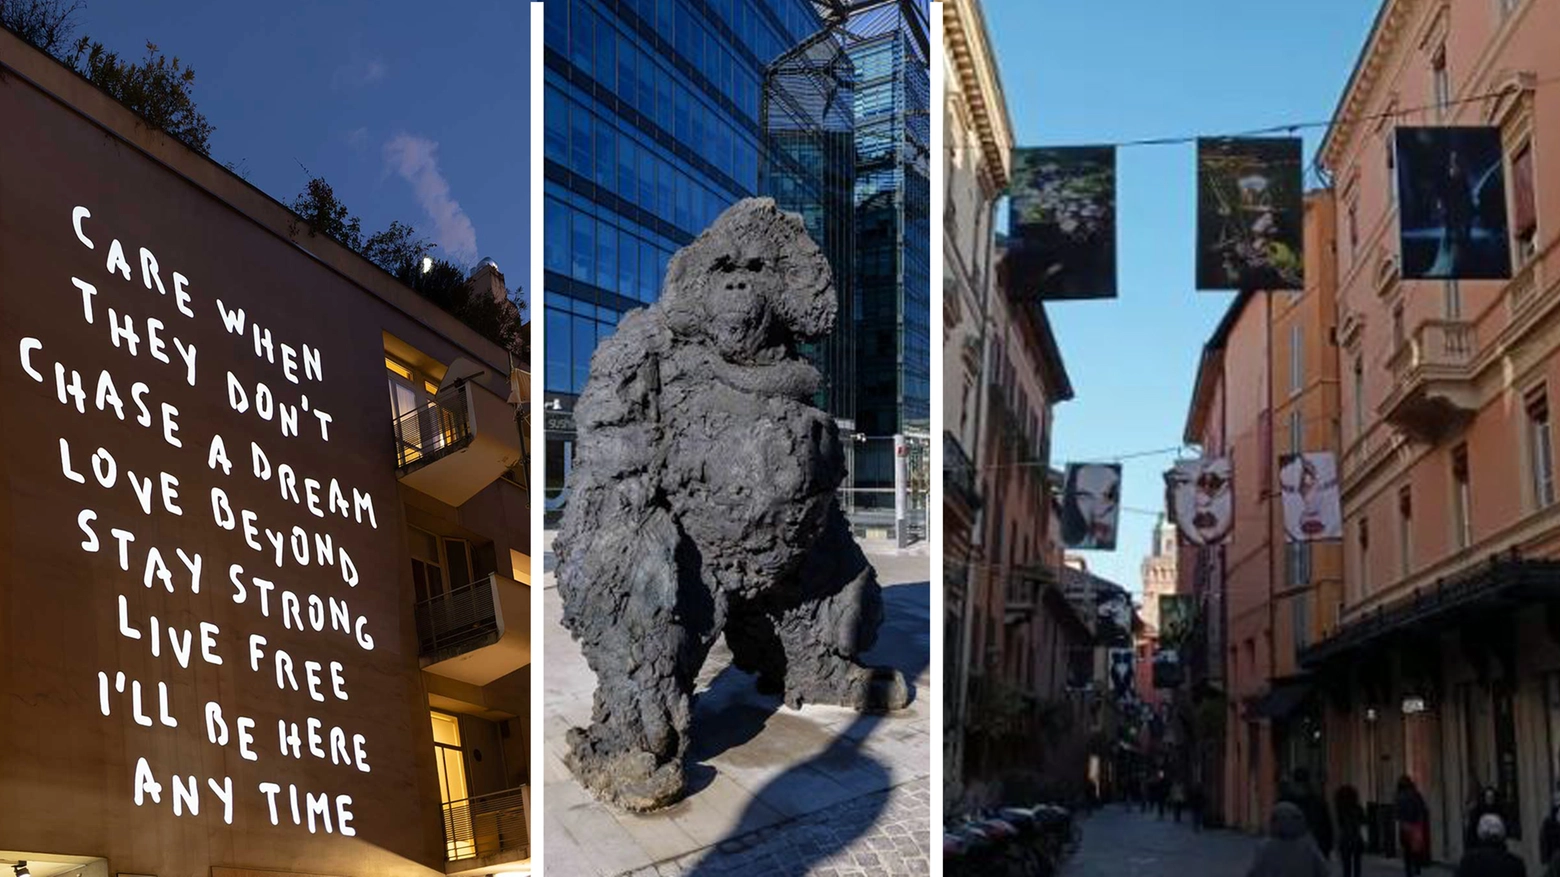 Gli eventi in occasione di Arte Fiera: la città si trasforma tra installazioni, statue, scritte luminose. La guida